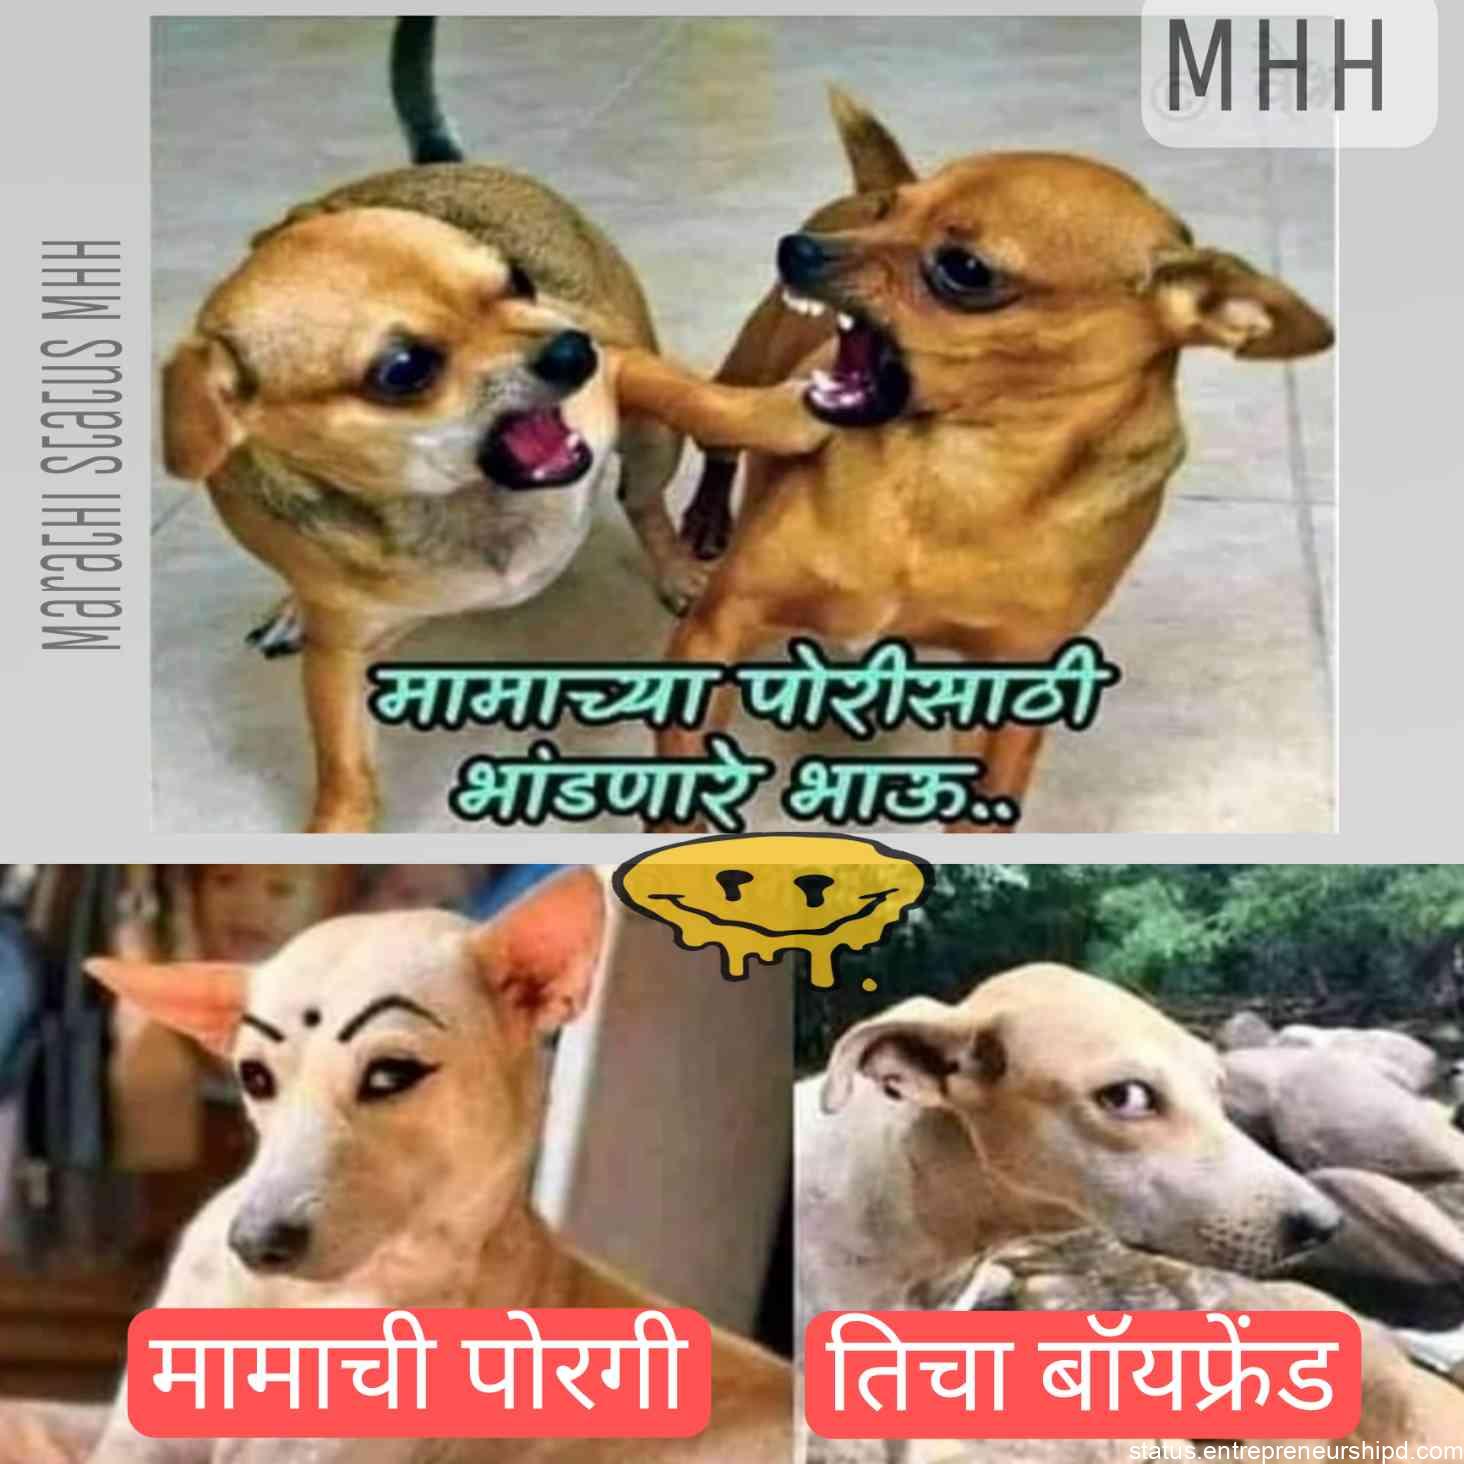 Marathi Memes | Funny Memes Marathi, Text on Images. - Marathi Status MHH